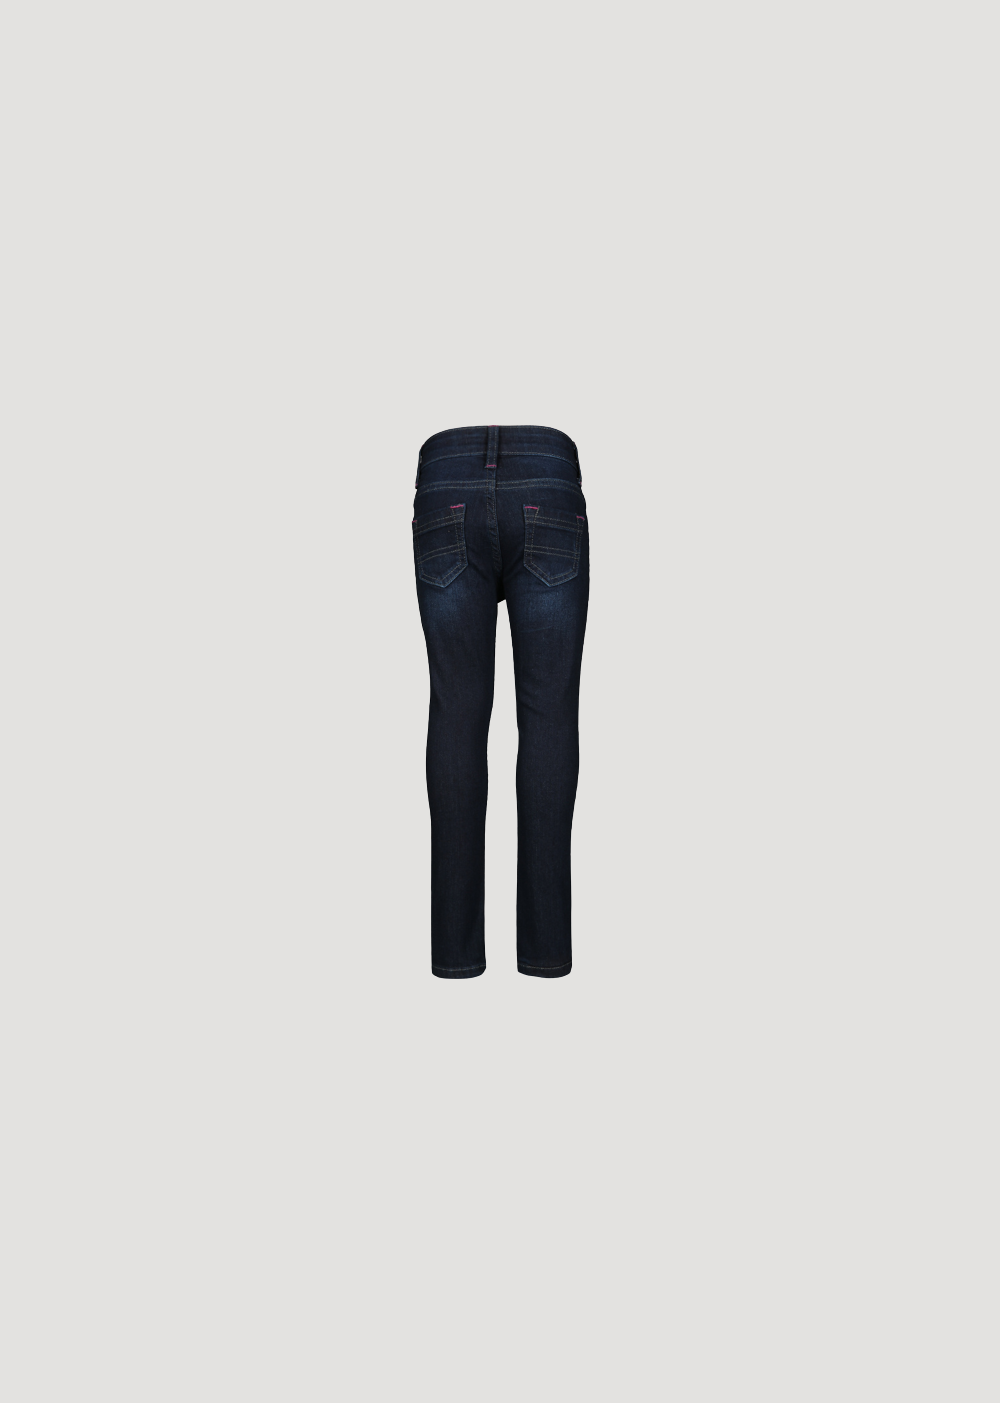 Jeans-Hose für Mädchen